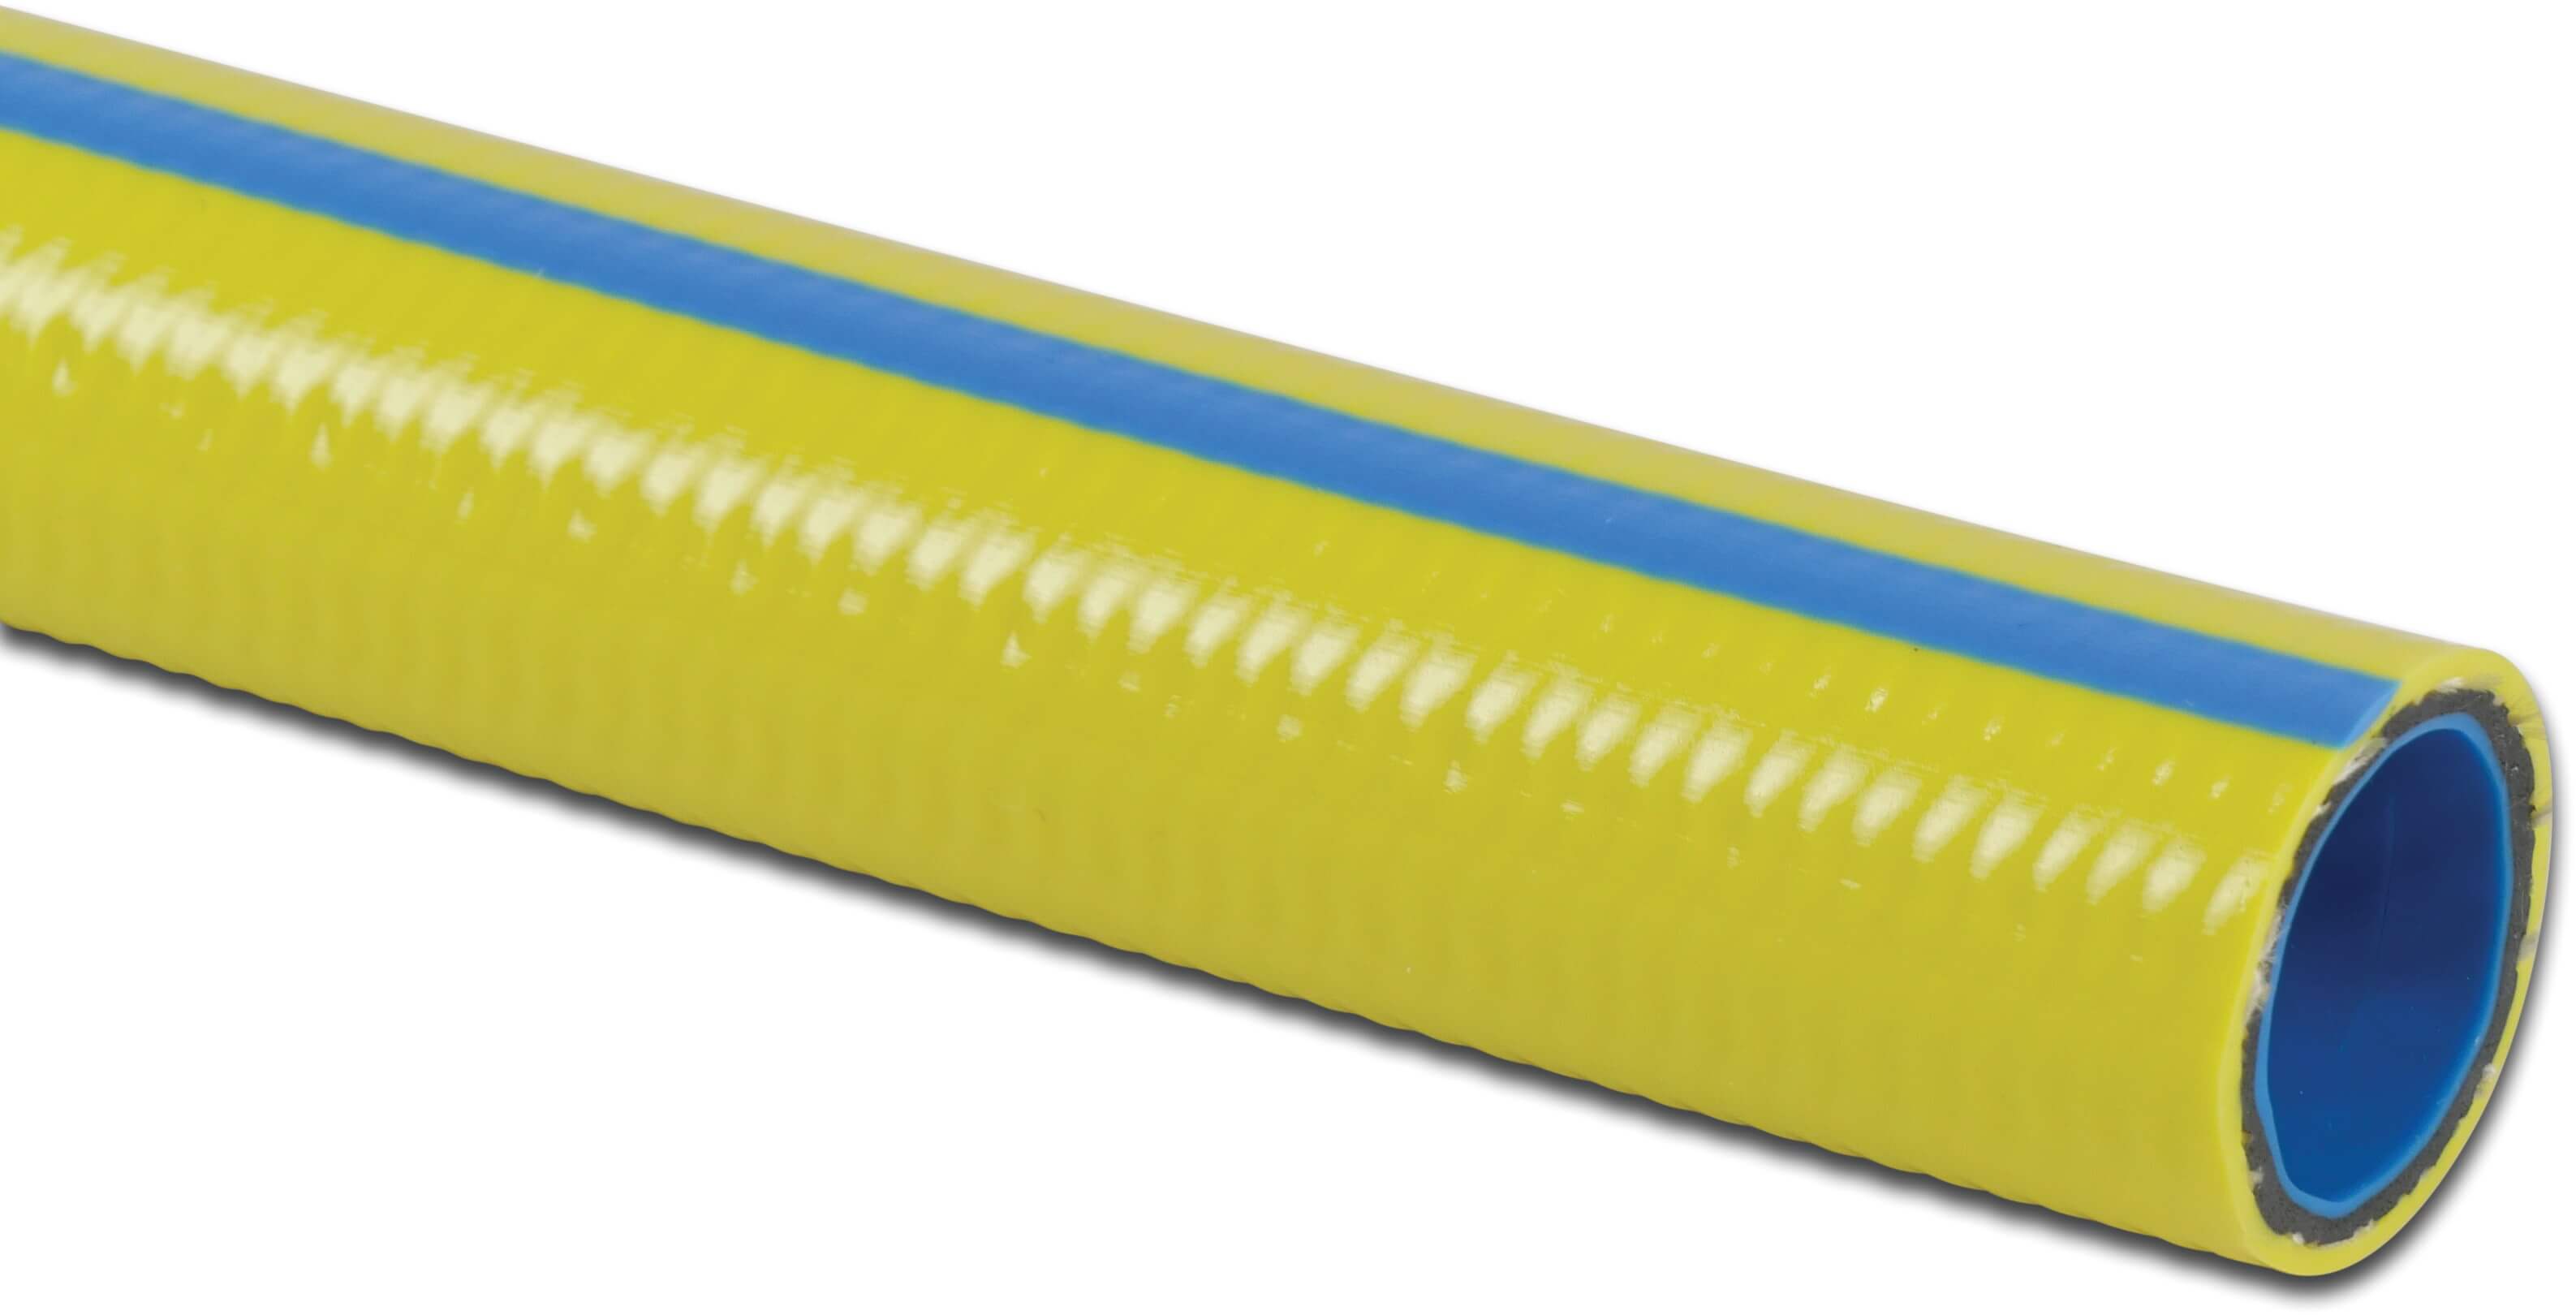 Torsino Wąż NTS PVC 12.5 mm 10bar żółto-niebieski 25m type Plus Anti Torsion System